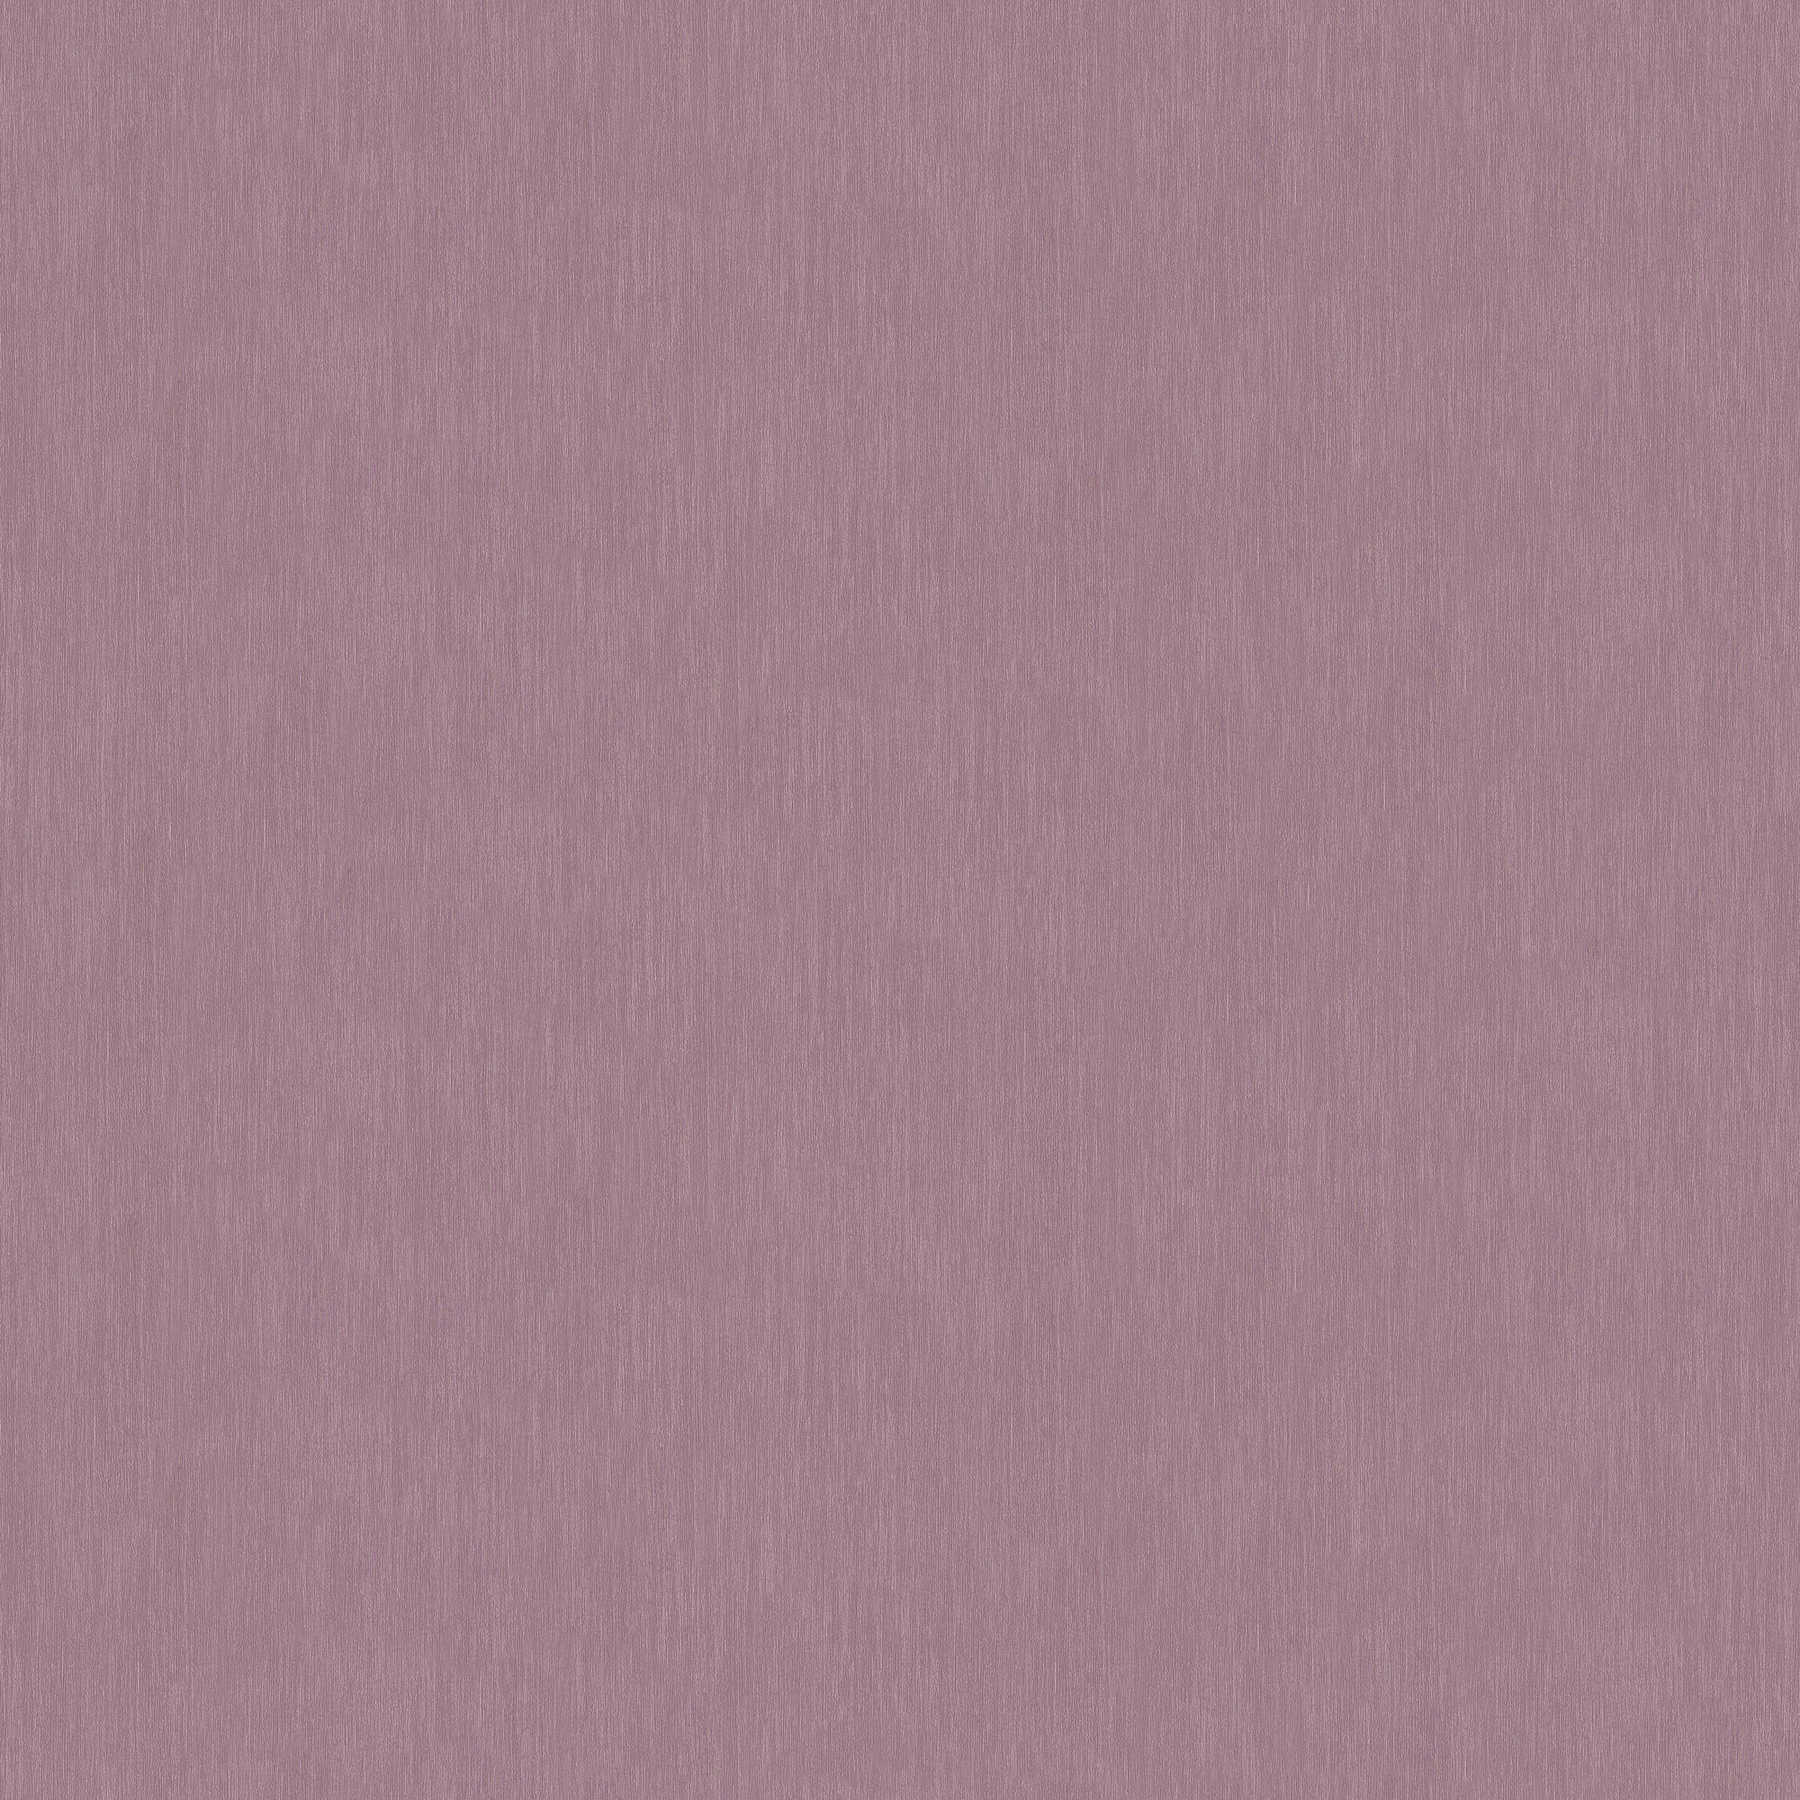         Non-woven wallpaper purple monochrome with structure design - purple
    